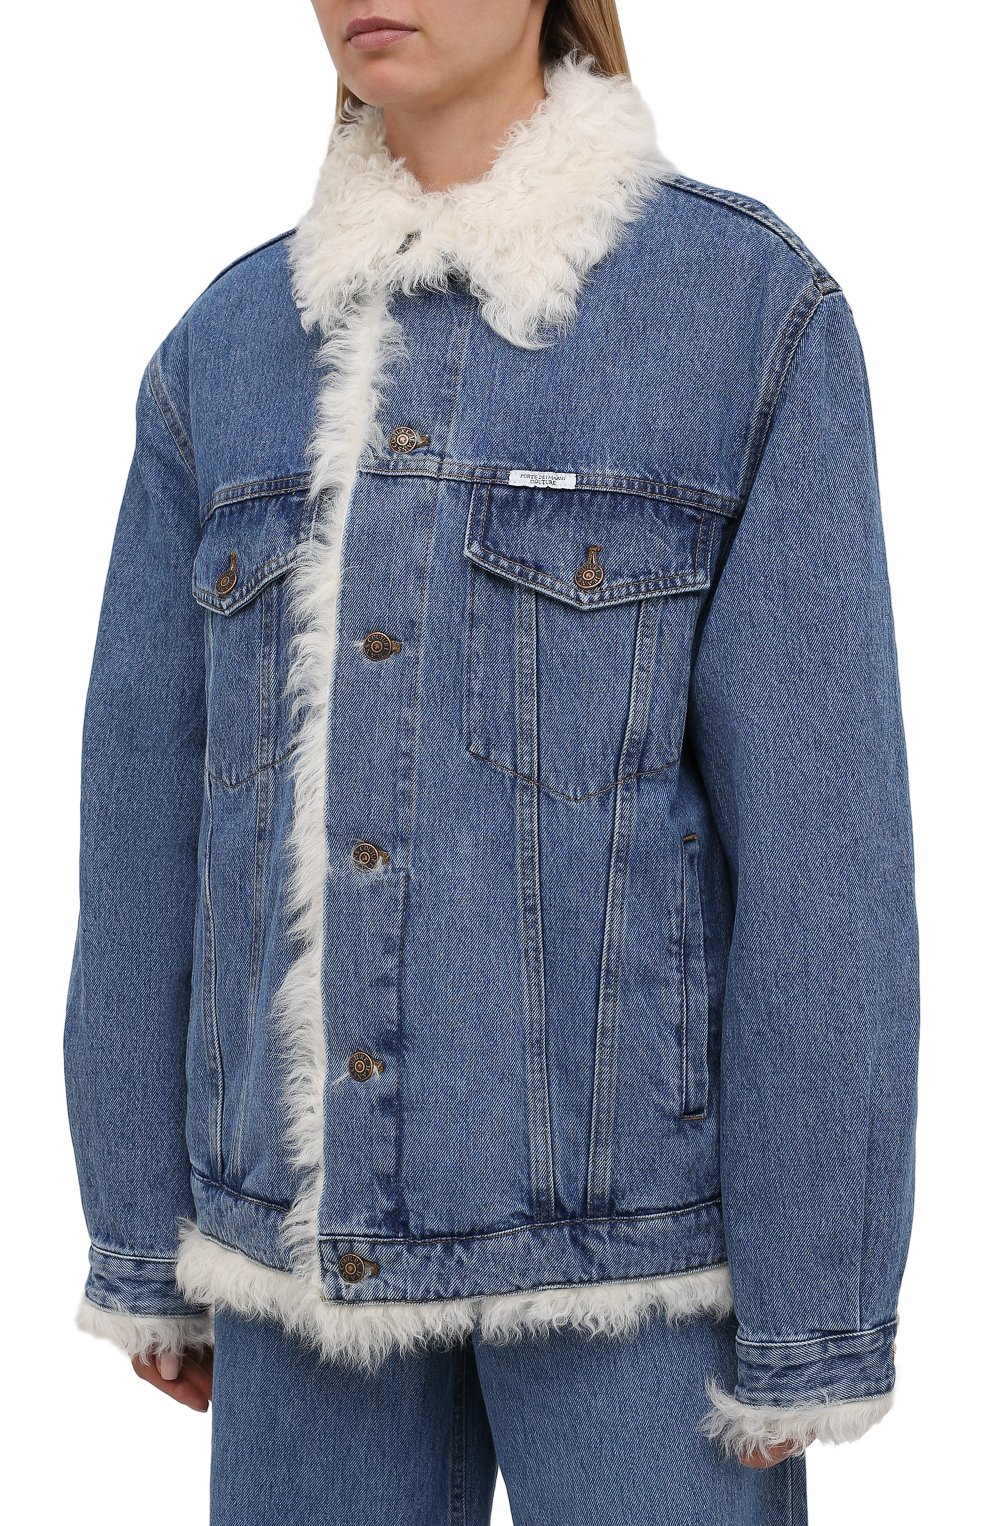 Женская голубая джинсовая куртка с подкладкой из овчины FORTE DEI MARMICOUTURE купить в интернет-магазине ЦУМ, арт. 21WF1396